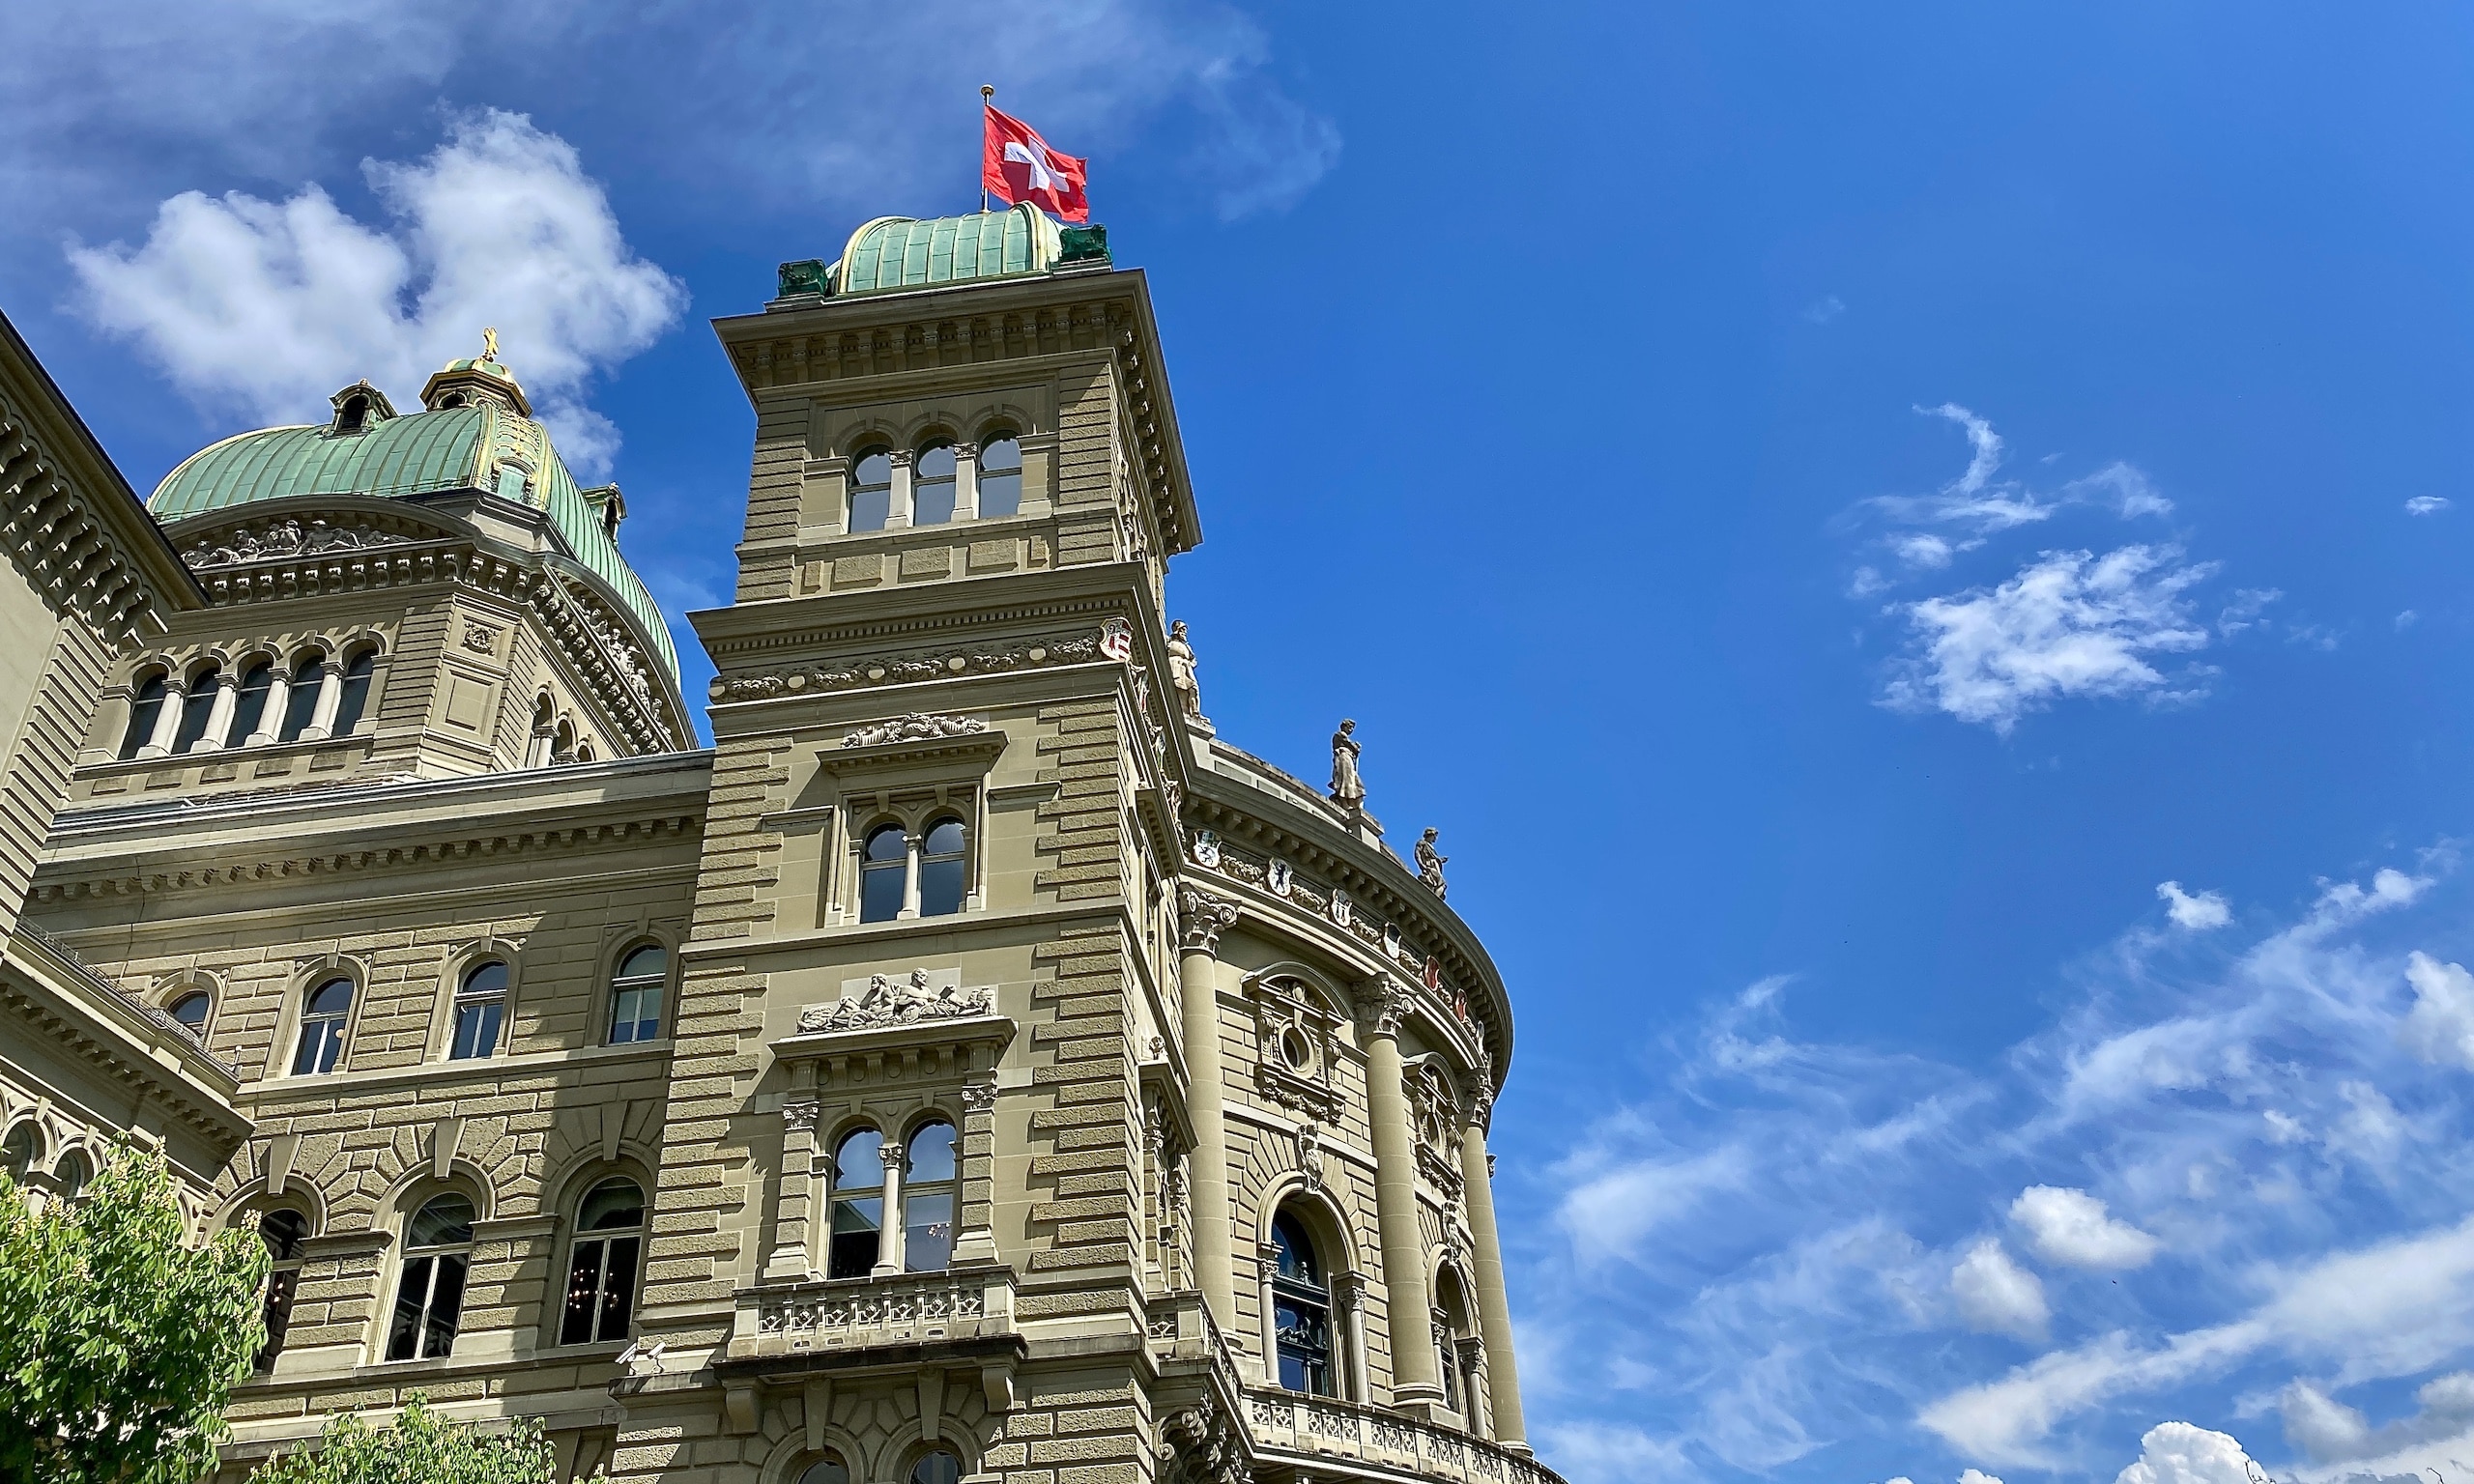 Вид на крыло Федерального дворца - резиденции правительства и парламента Швейцарской Конфедерации в городе федерального значения Берне. 30 апреля 2022 г. (© schwingen.net)